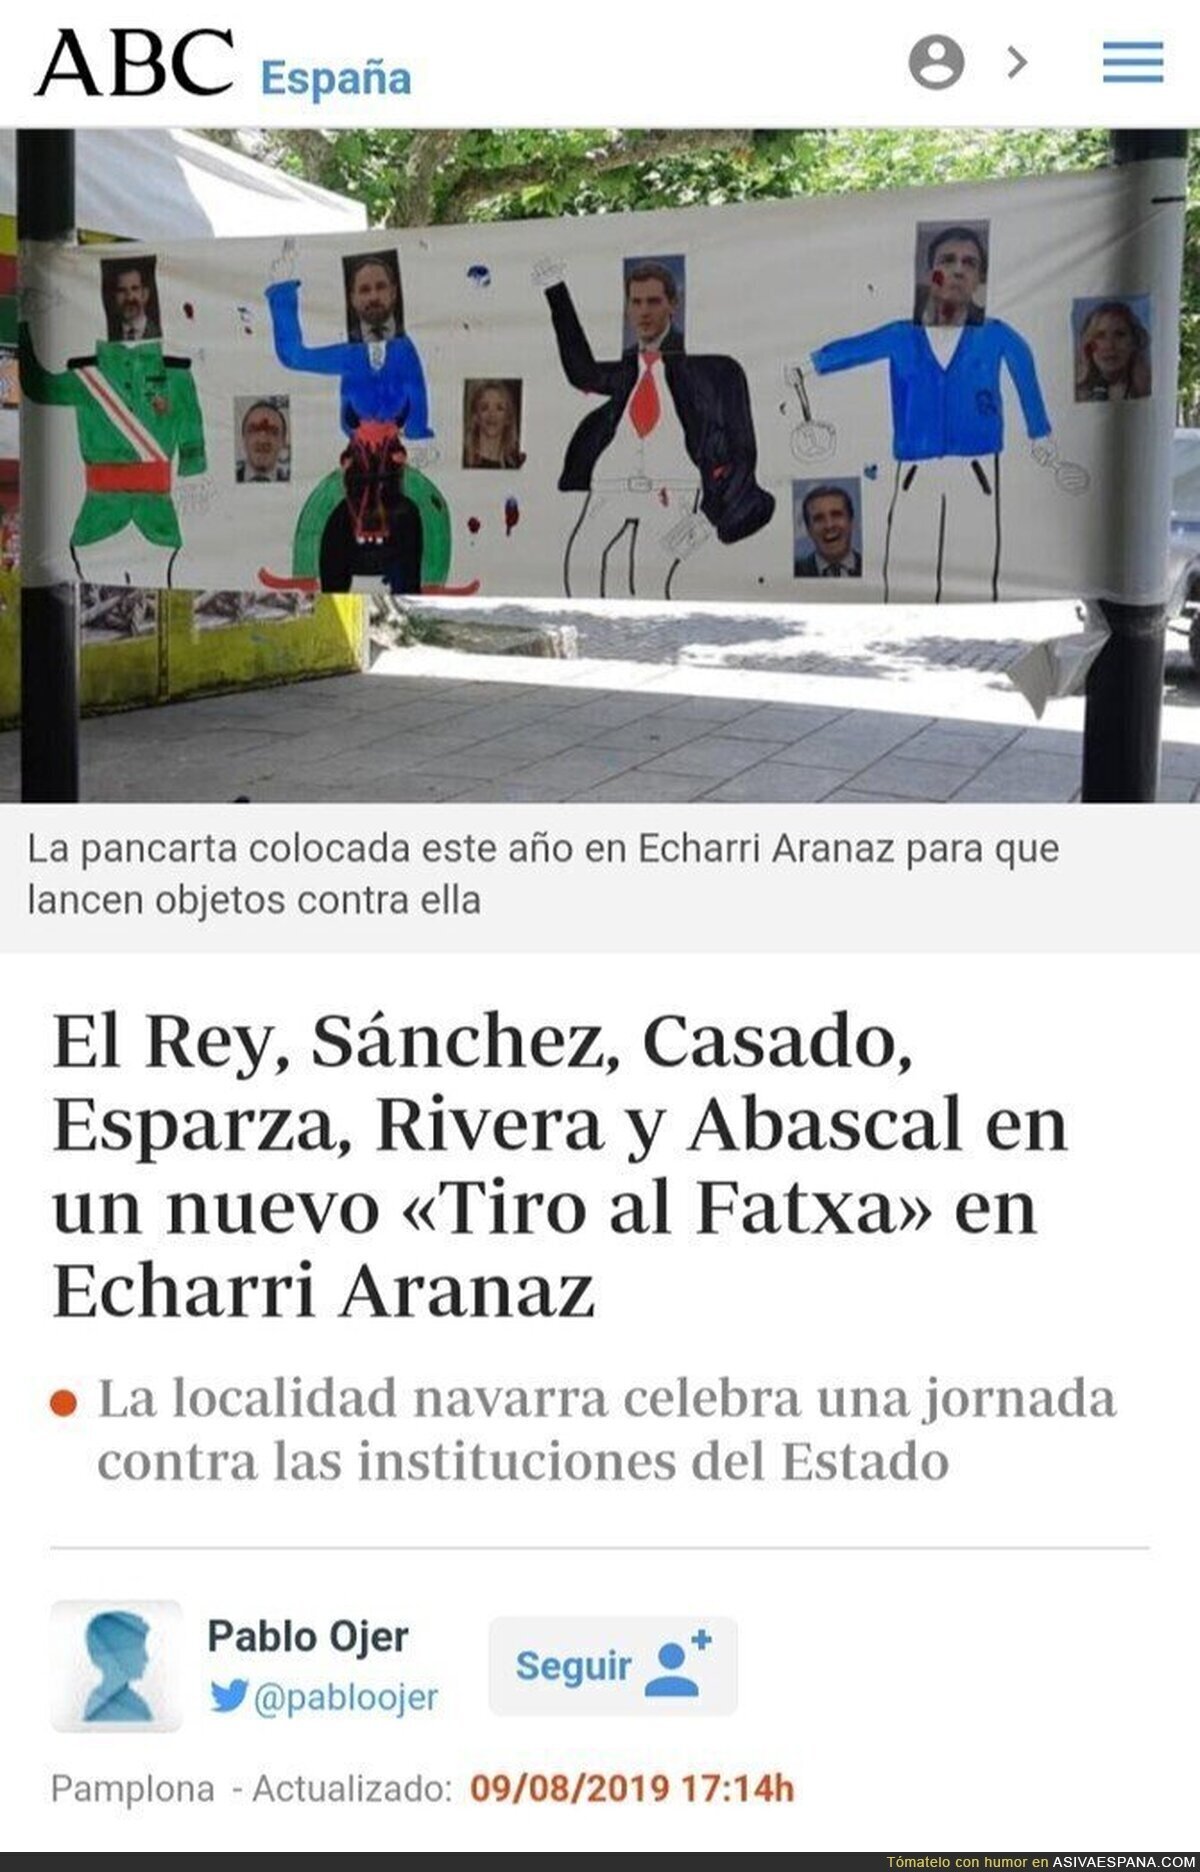 La tauromaquia se quiere prohibir en España, pero que nadie toque a los amigos de los pistoleros en las fiestas de los pueblos